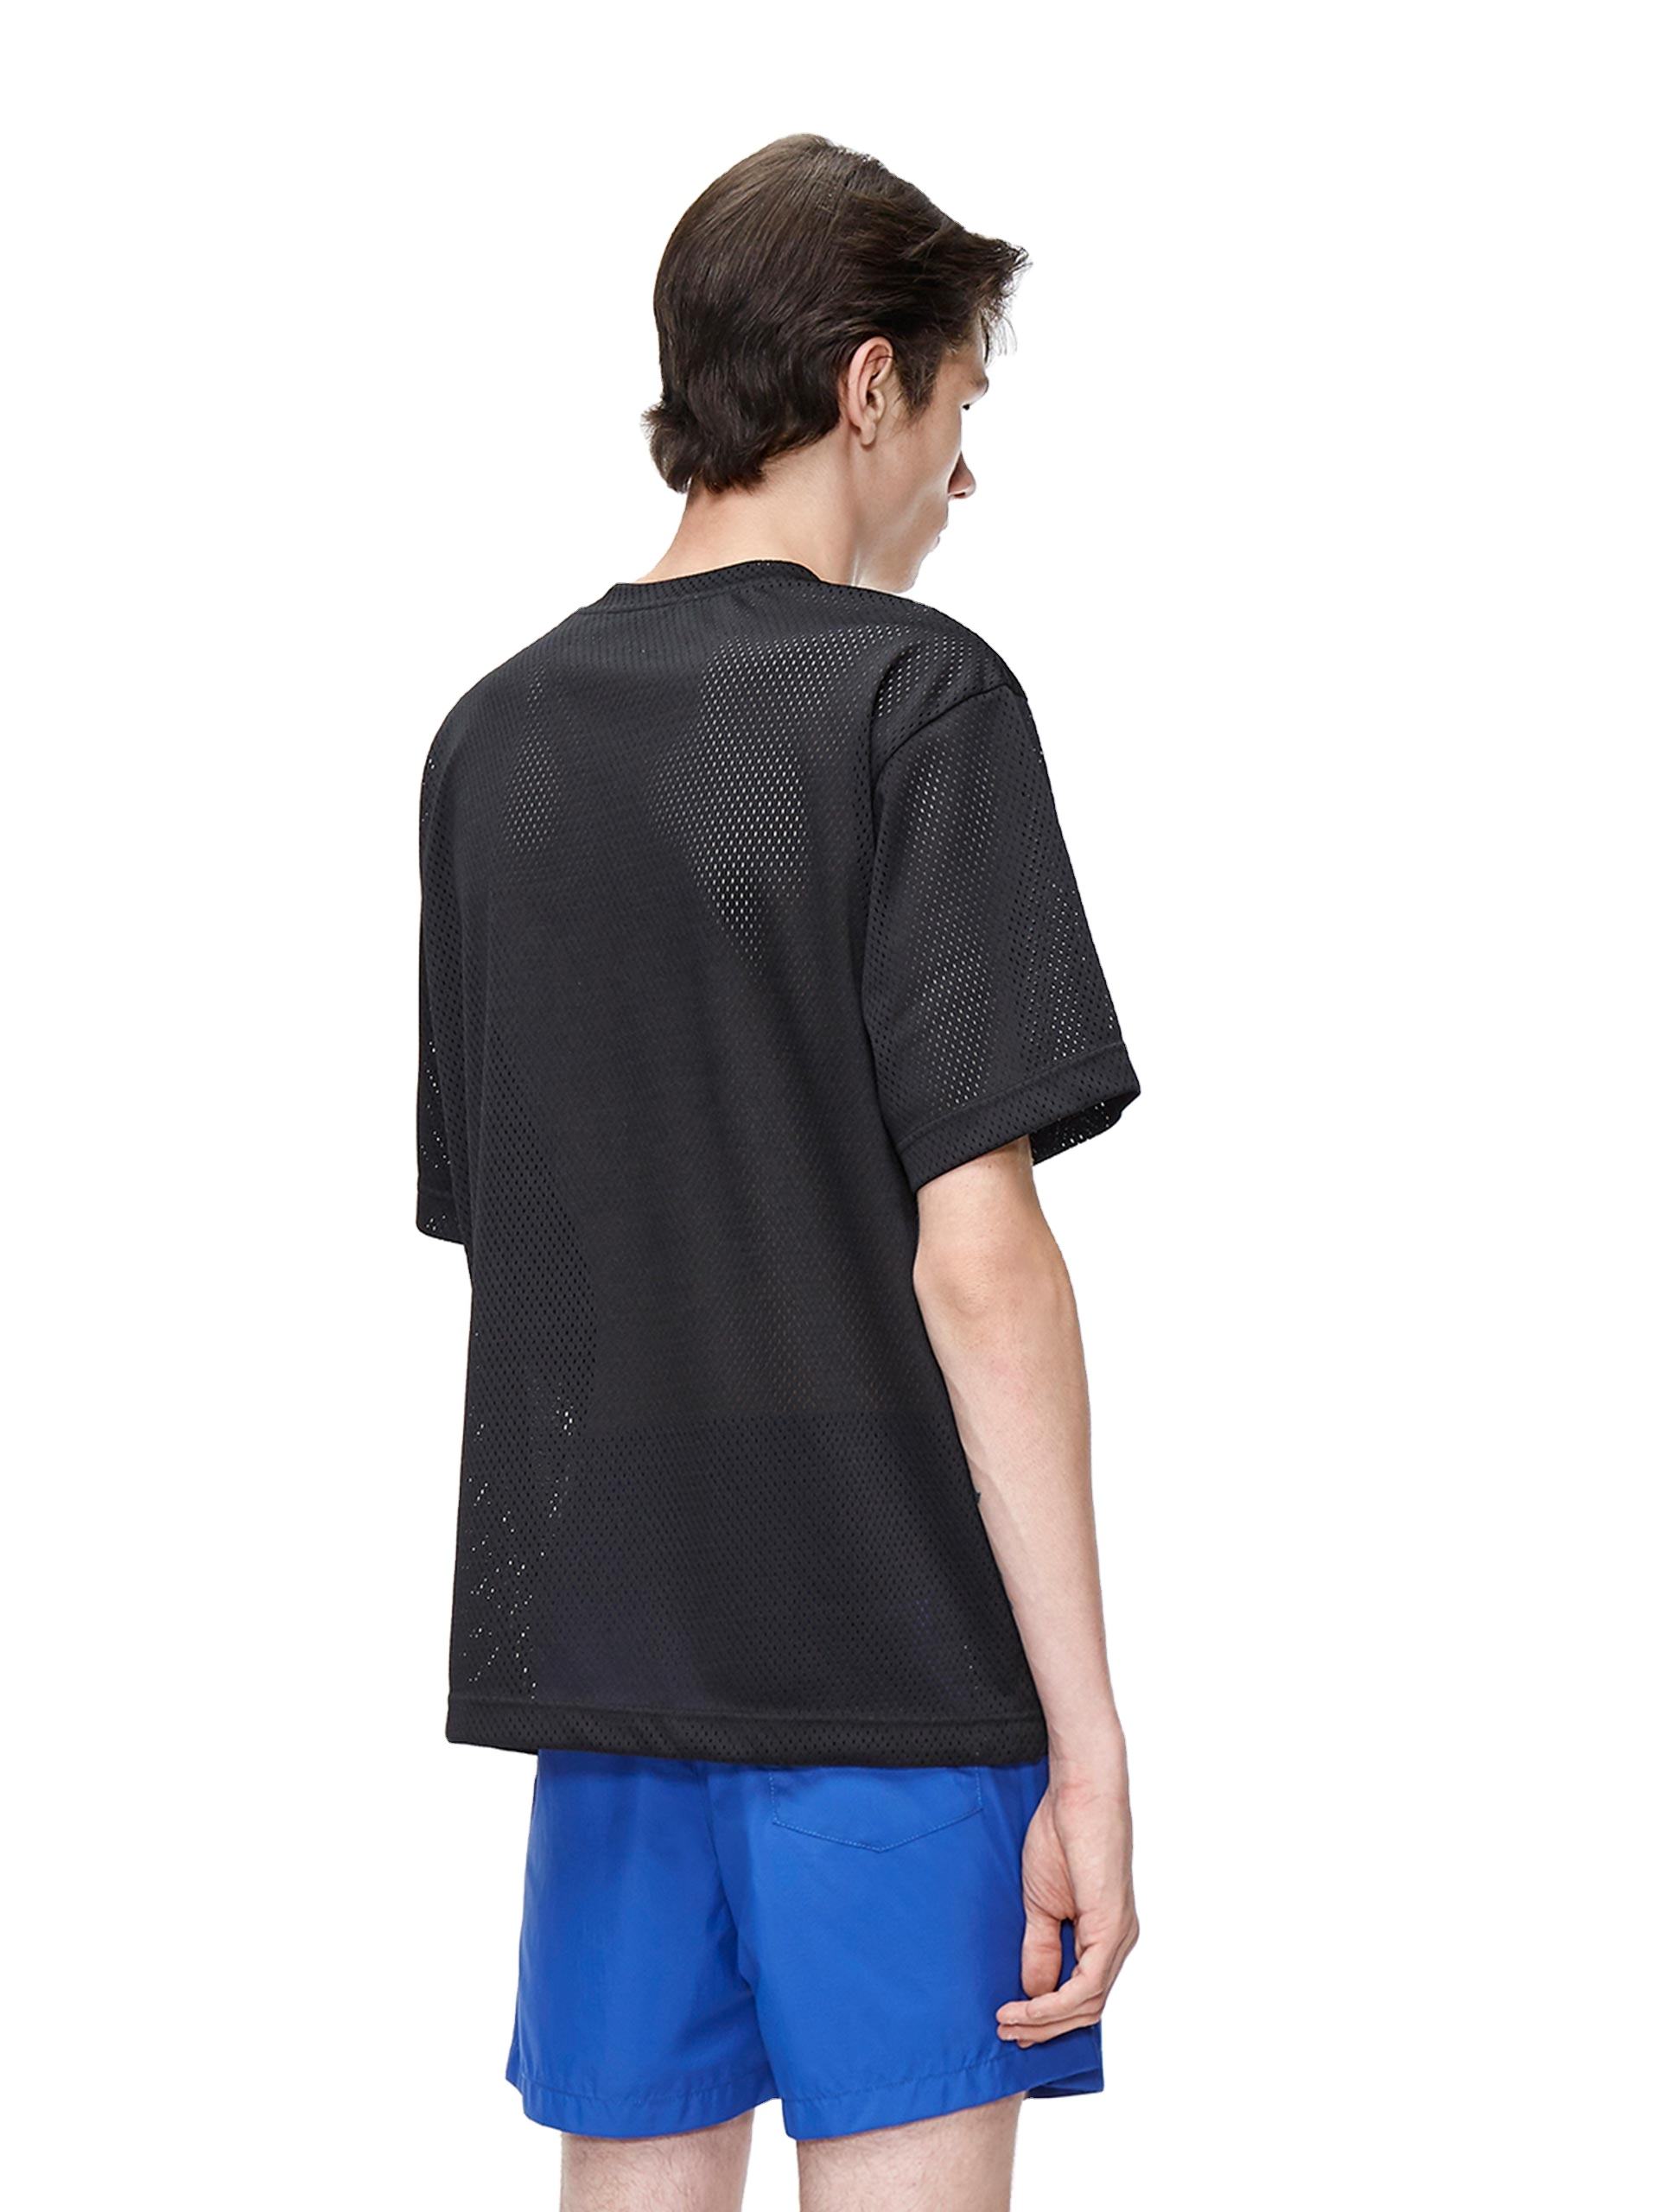 Veleprodajna moška črna zračna mrežasta majica z žepi